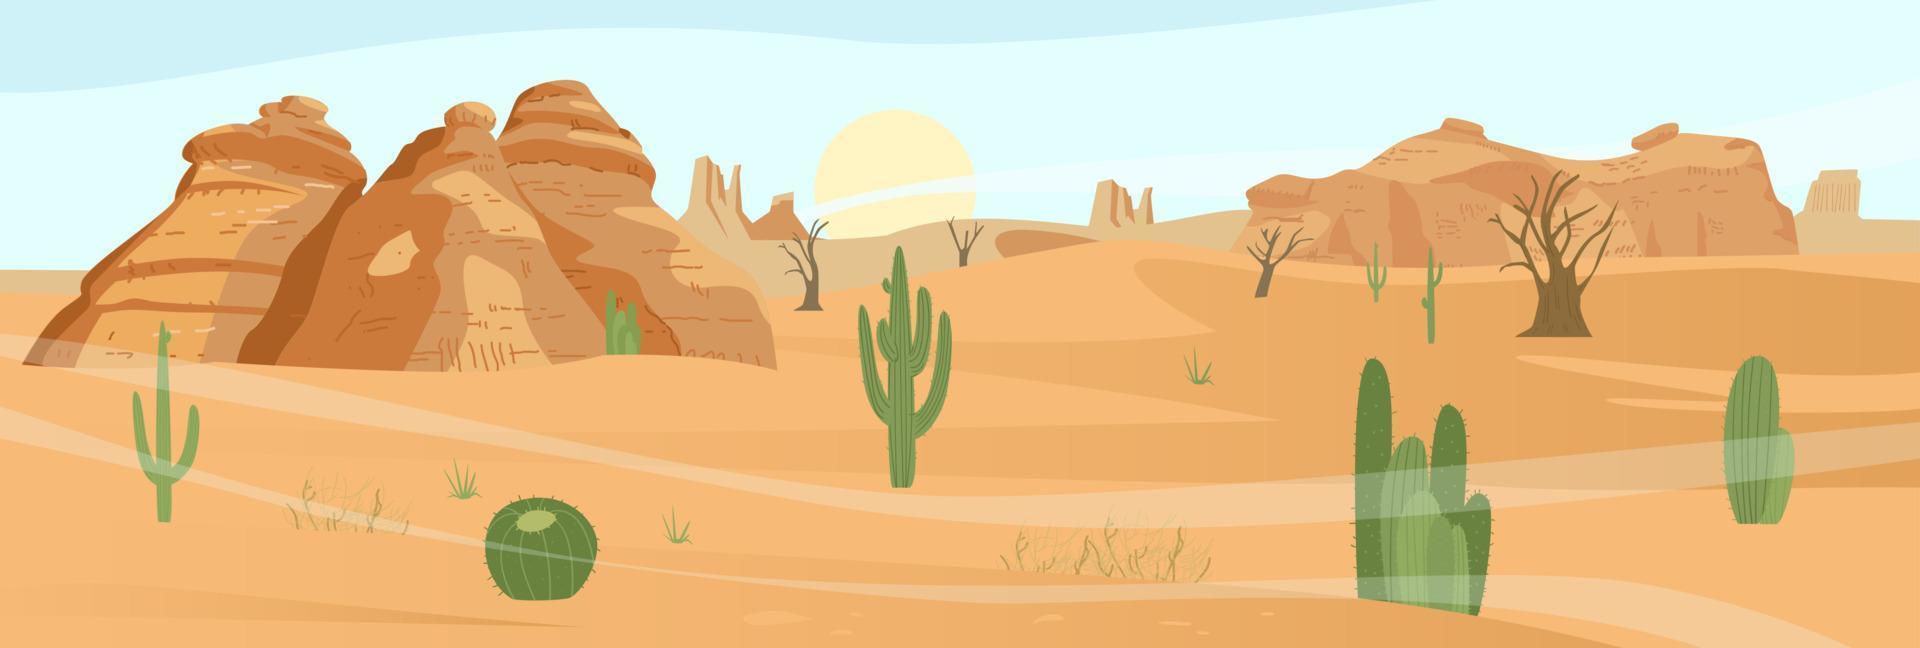 paysage désertique avec cactus et rochers de sable. illustration vectorielle plane. vecteur